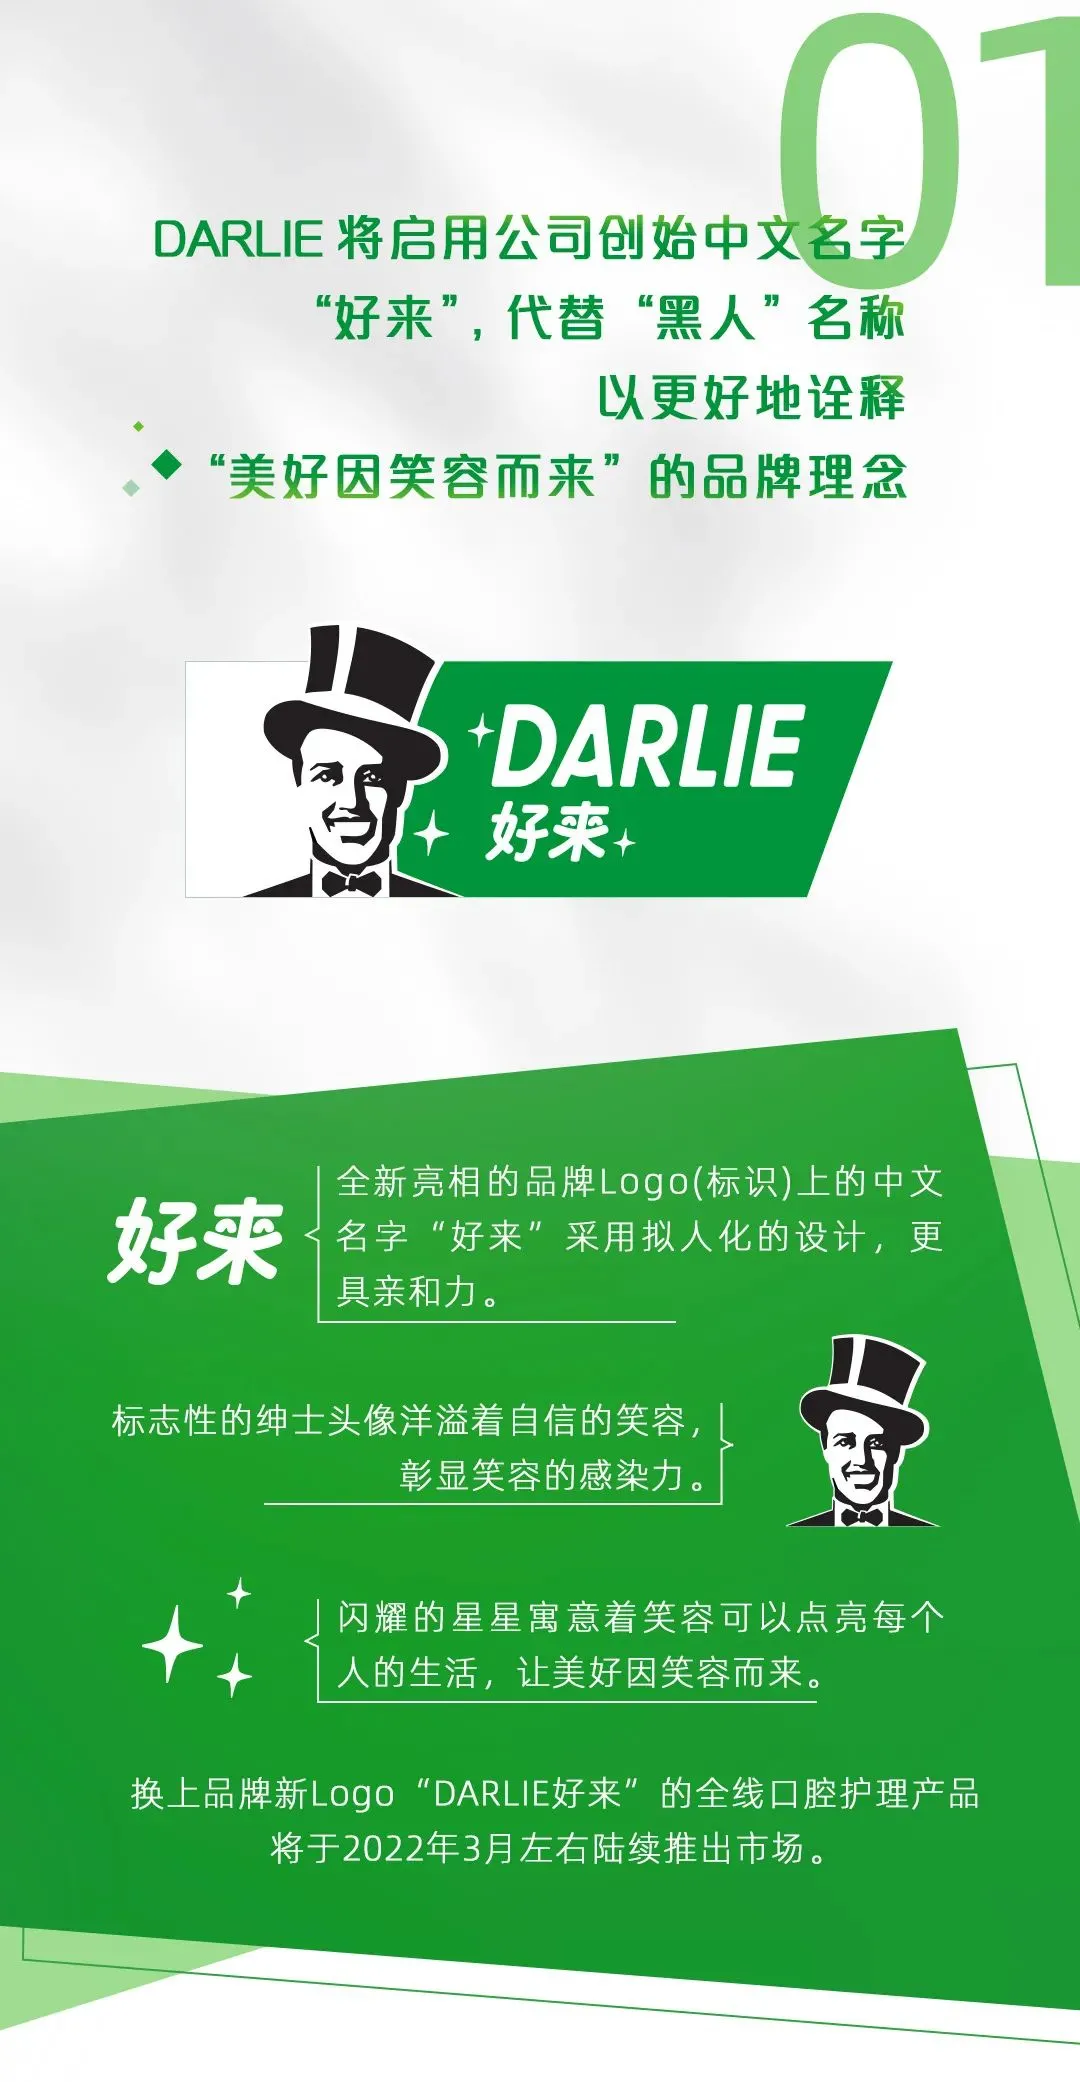 黑人牙膏启动品牌焕新计划，更名创始中文名“好来”，升级品牌定位